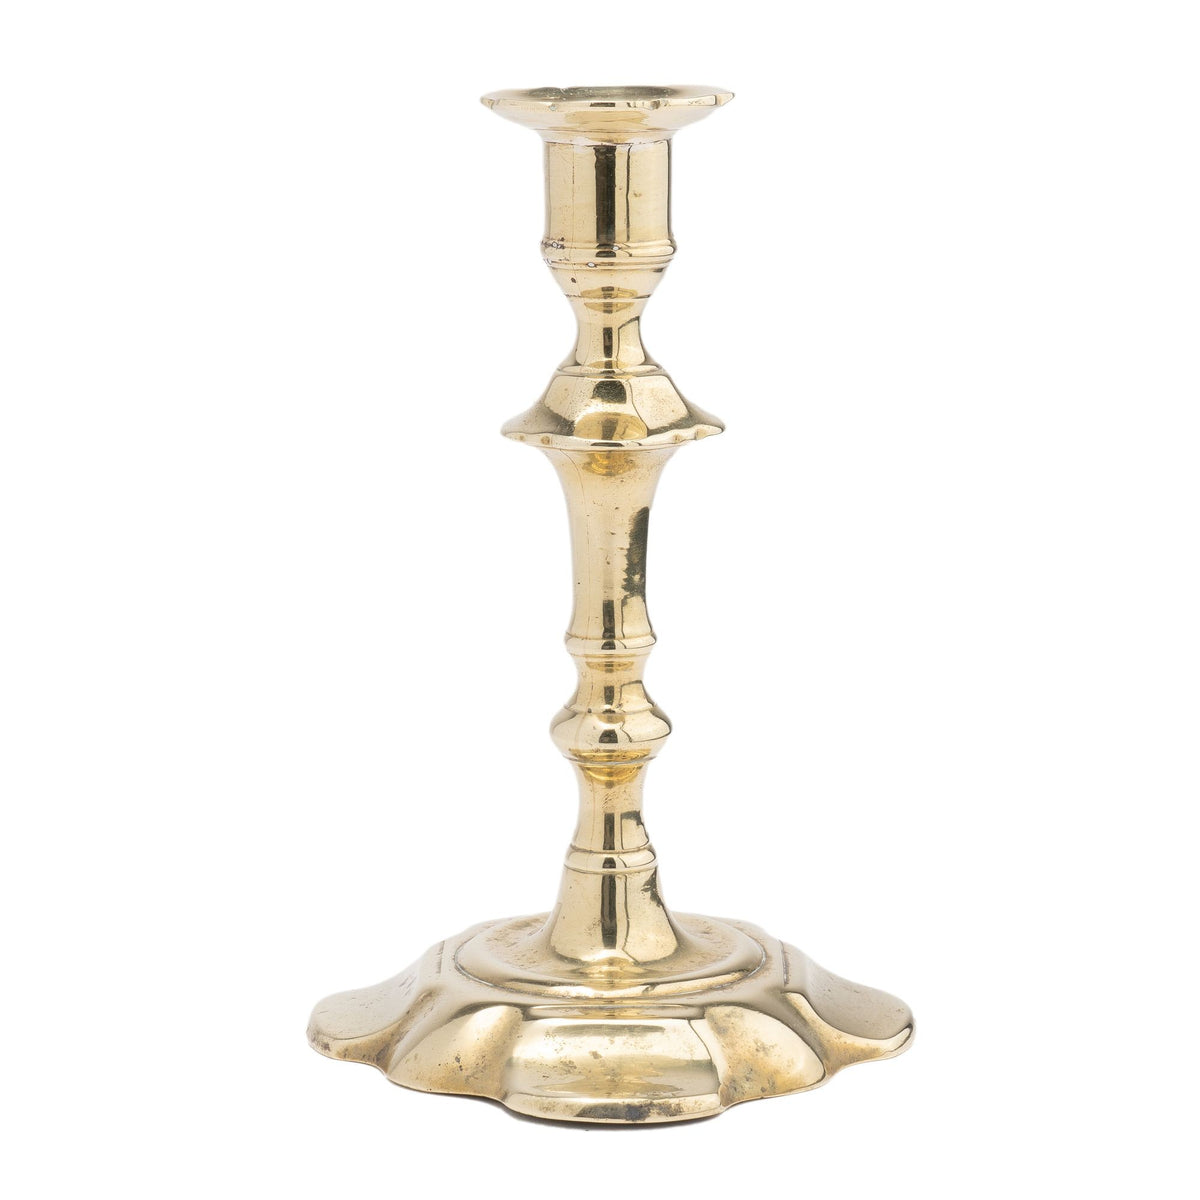 English Queen Anne cast brass petal base candlestick (1750-60